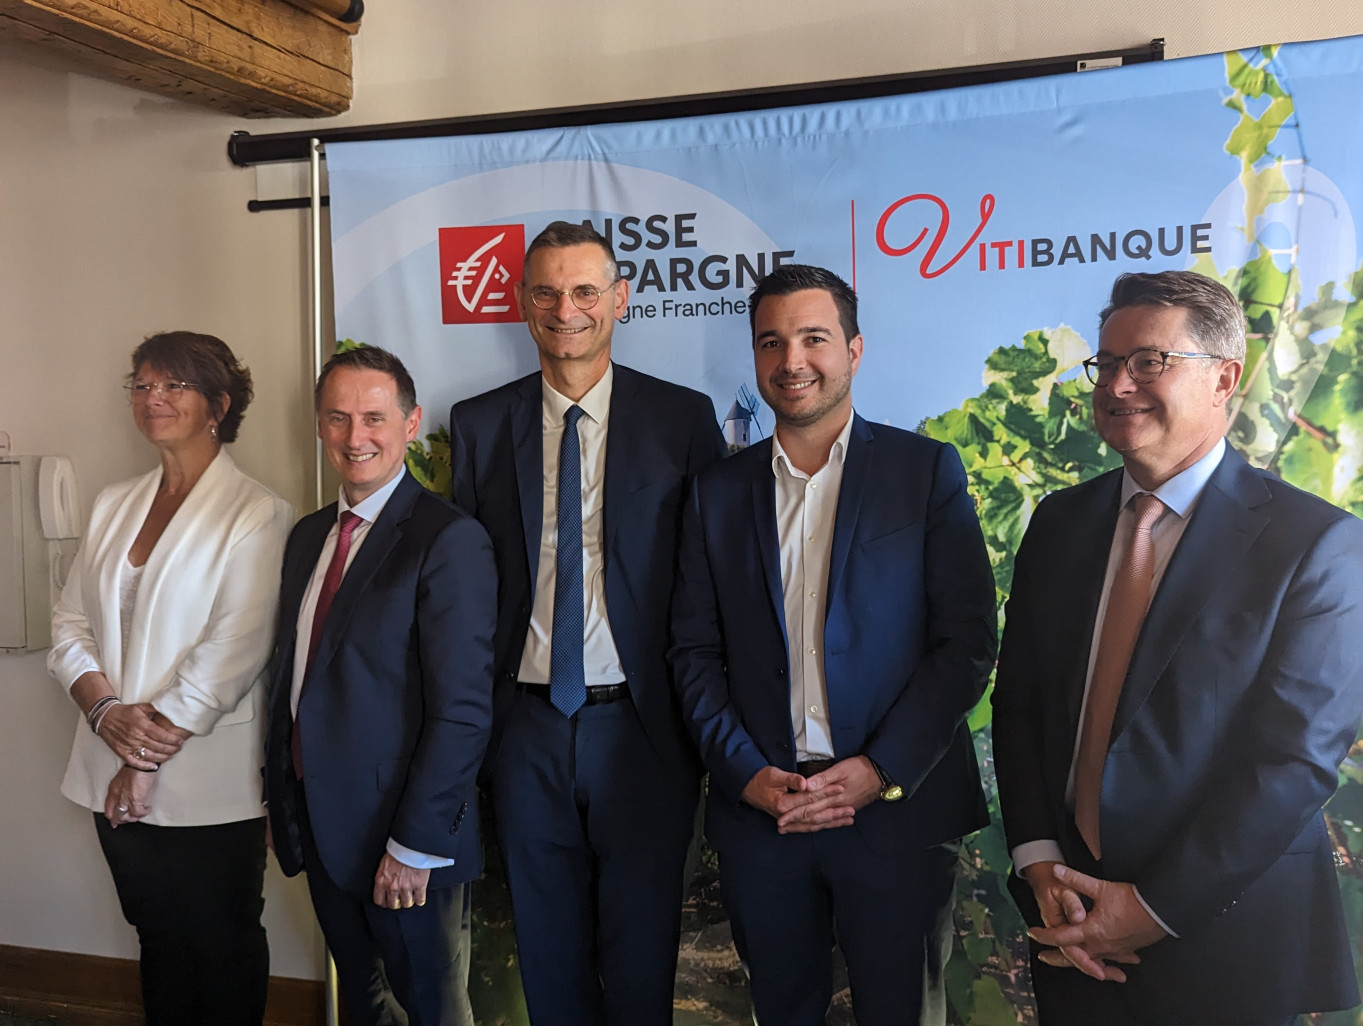 Les représentants de la filière viticole et les dirigeants de la Caisse d’Epargne Bourgogne Franche-Comté ont officiellement lancé Vitibanque, le dispositif dédié à la filière viticole, ce 31 mai ce 31 mai à Beaune. (Aletheia Press / Nadège Hubert)